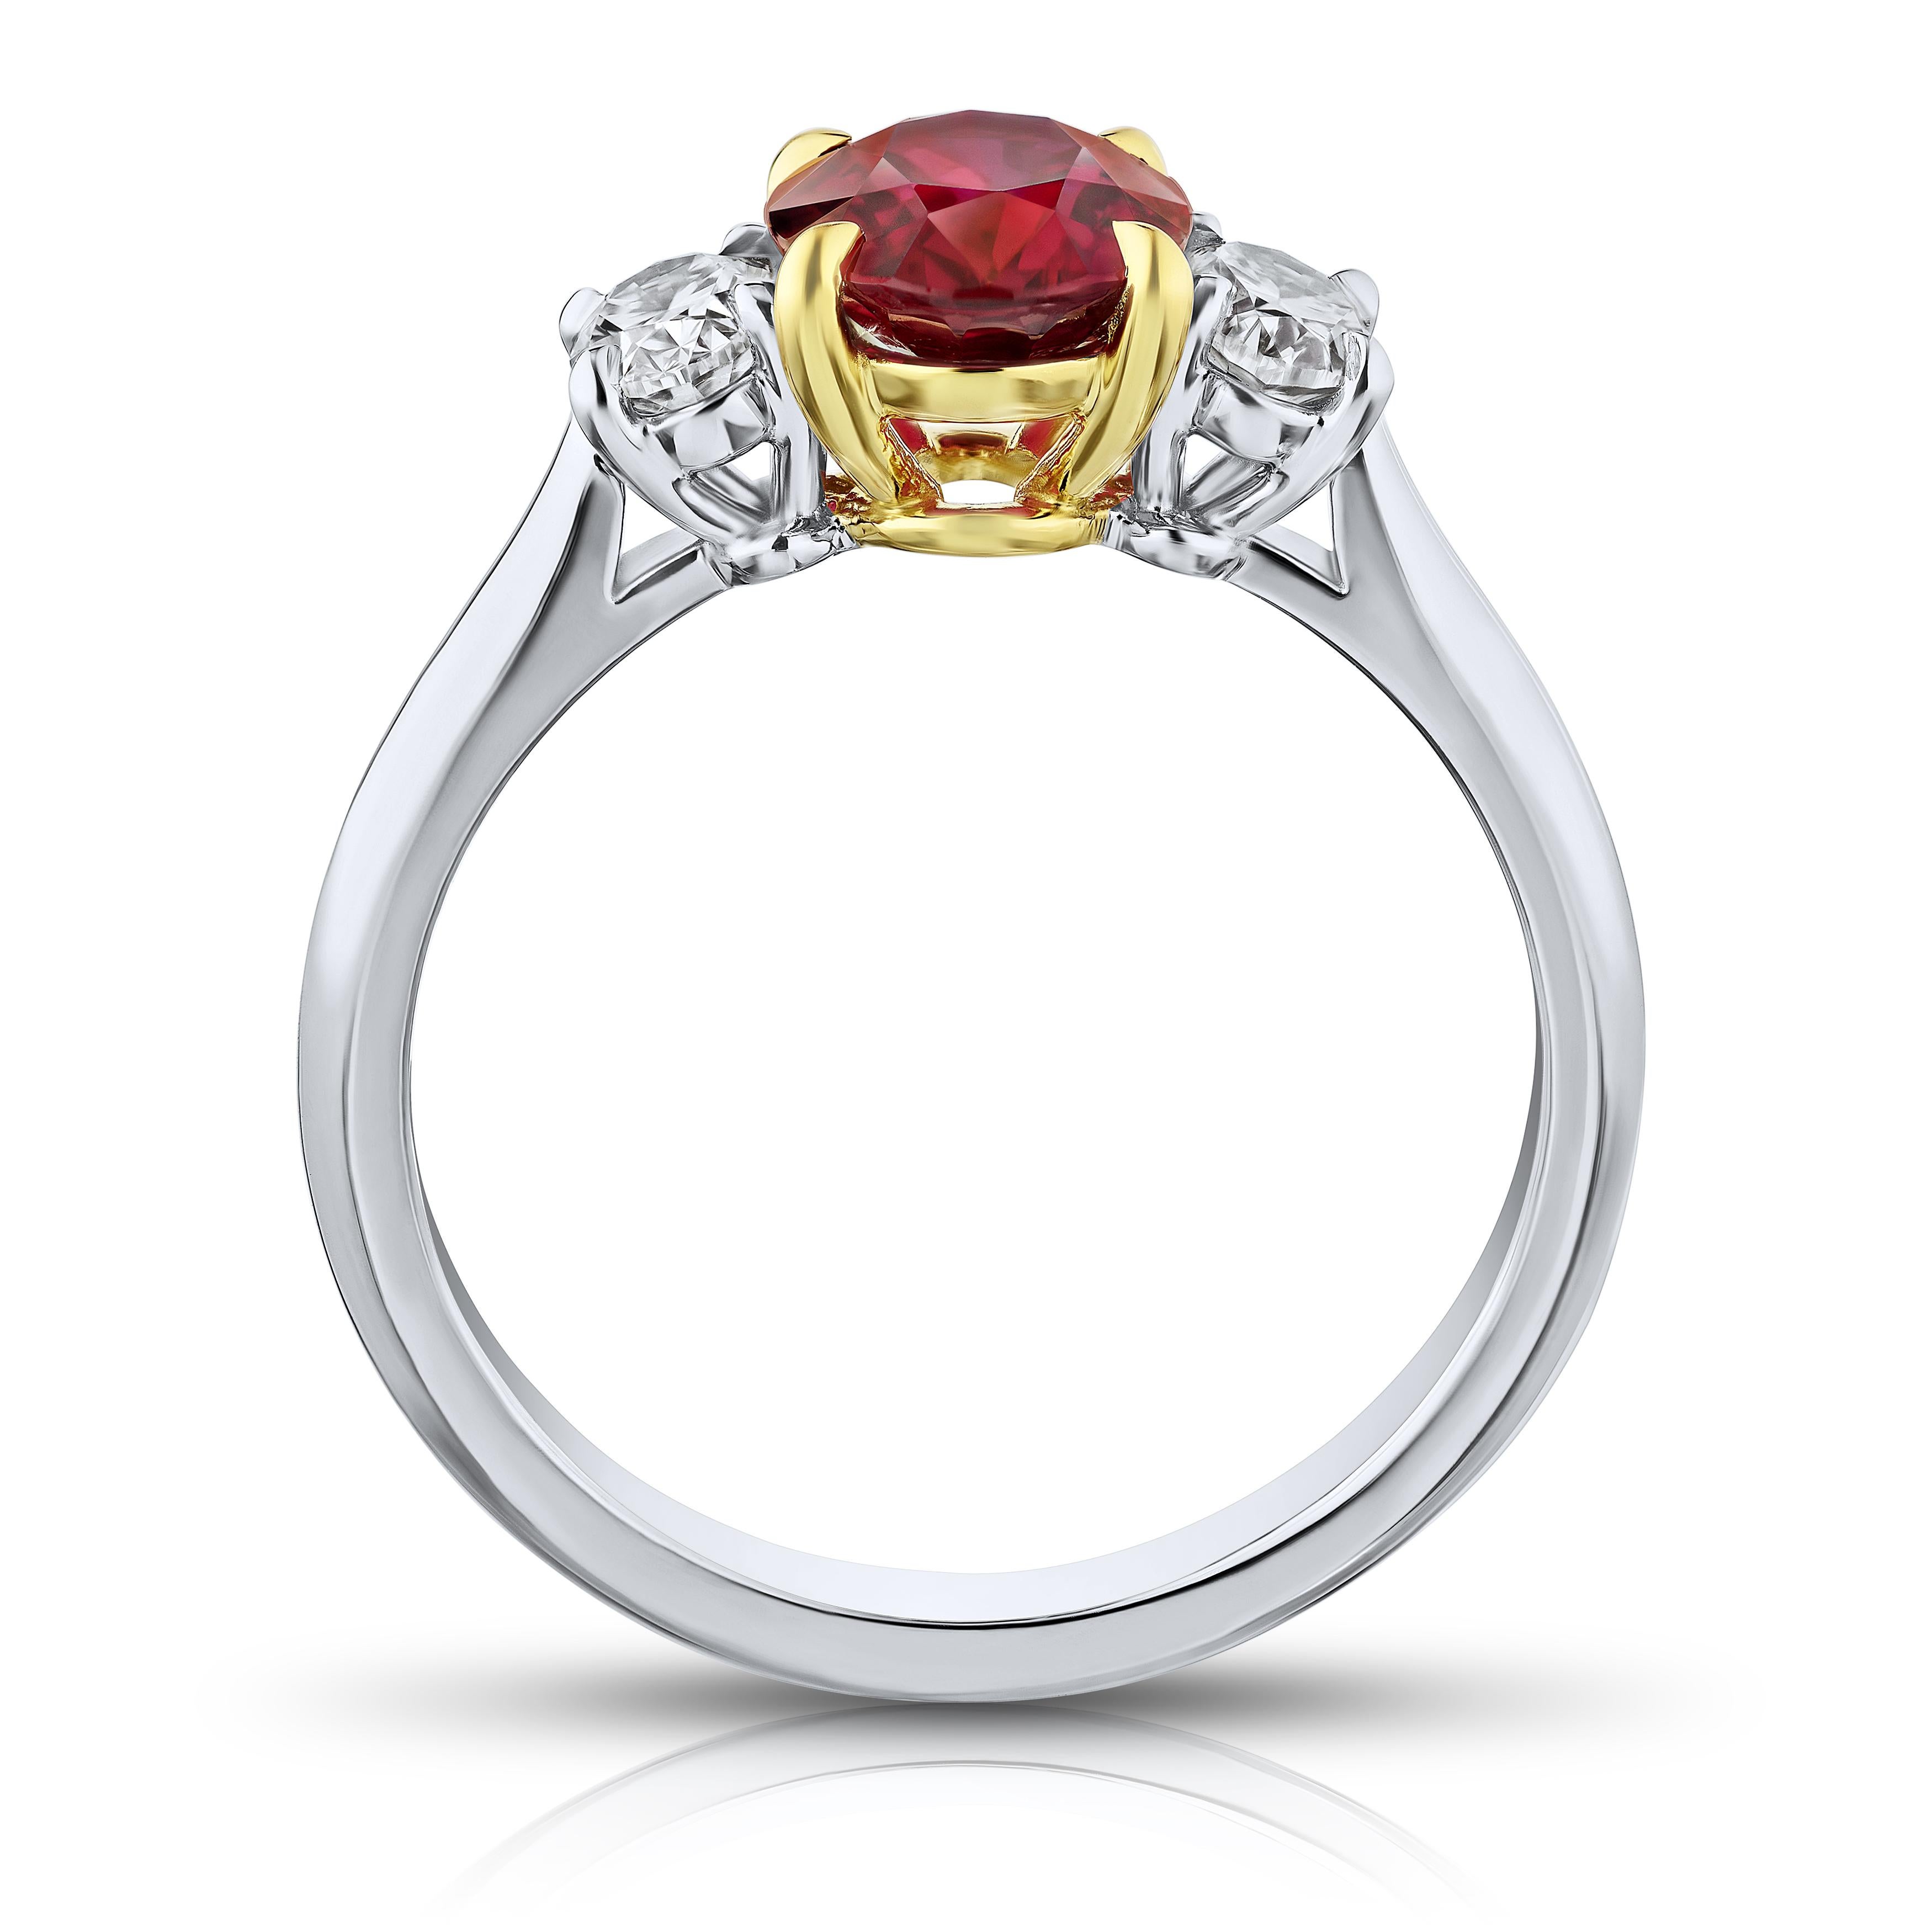 1.76 Karat ovaler roter Rubin mit ovalen Diamanten von 0,56 Karat in einem Ring aus Platin und 18 Karat Gelbgold. 
Der Ring hat derzeit die Größe 7. Resizing auf Ihre Fingergröße ist im Preis inbegriffen.